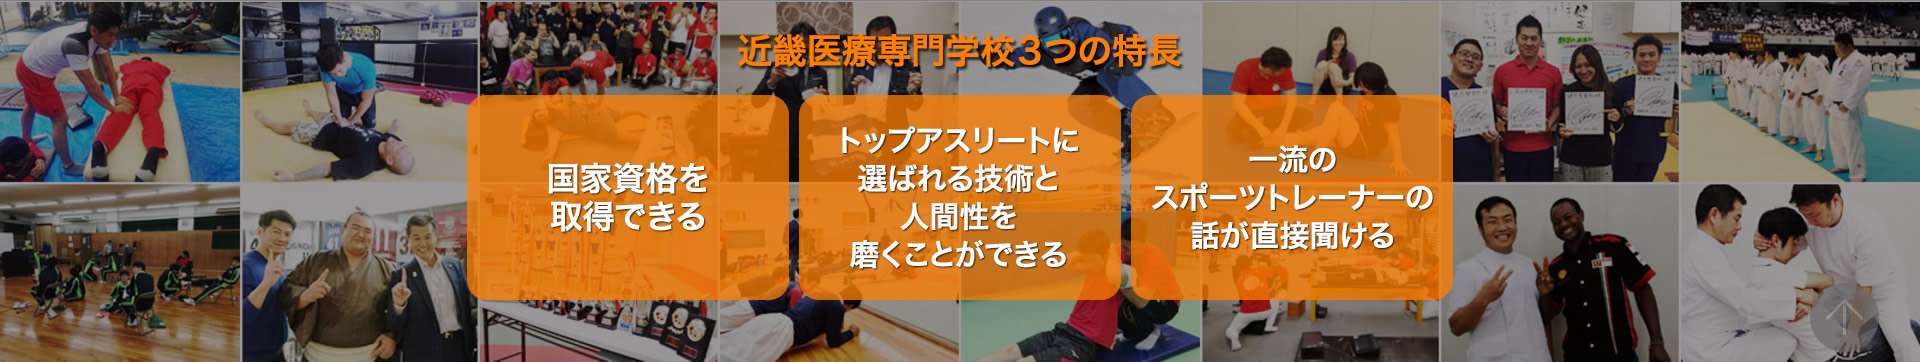 近畿医療専門学校は大阪を中心に全国でスポーツトレーナー活動を行っている専門学校です。